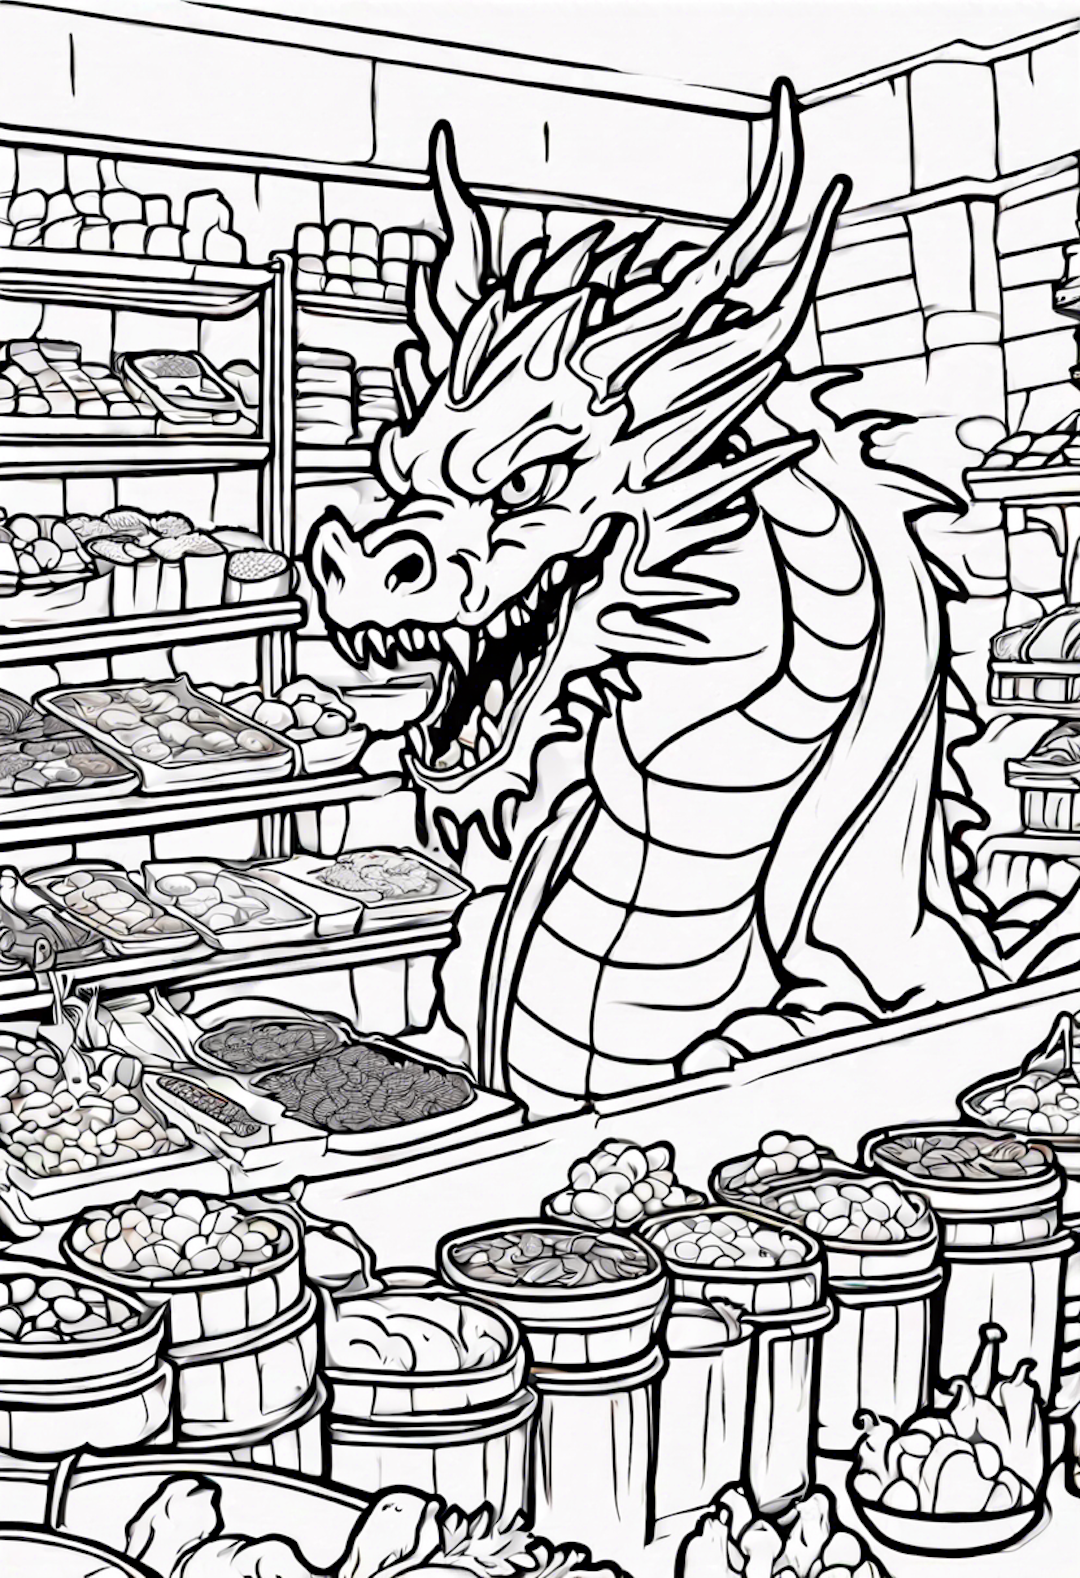 Dragon In A Delicious Food Market